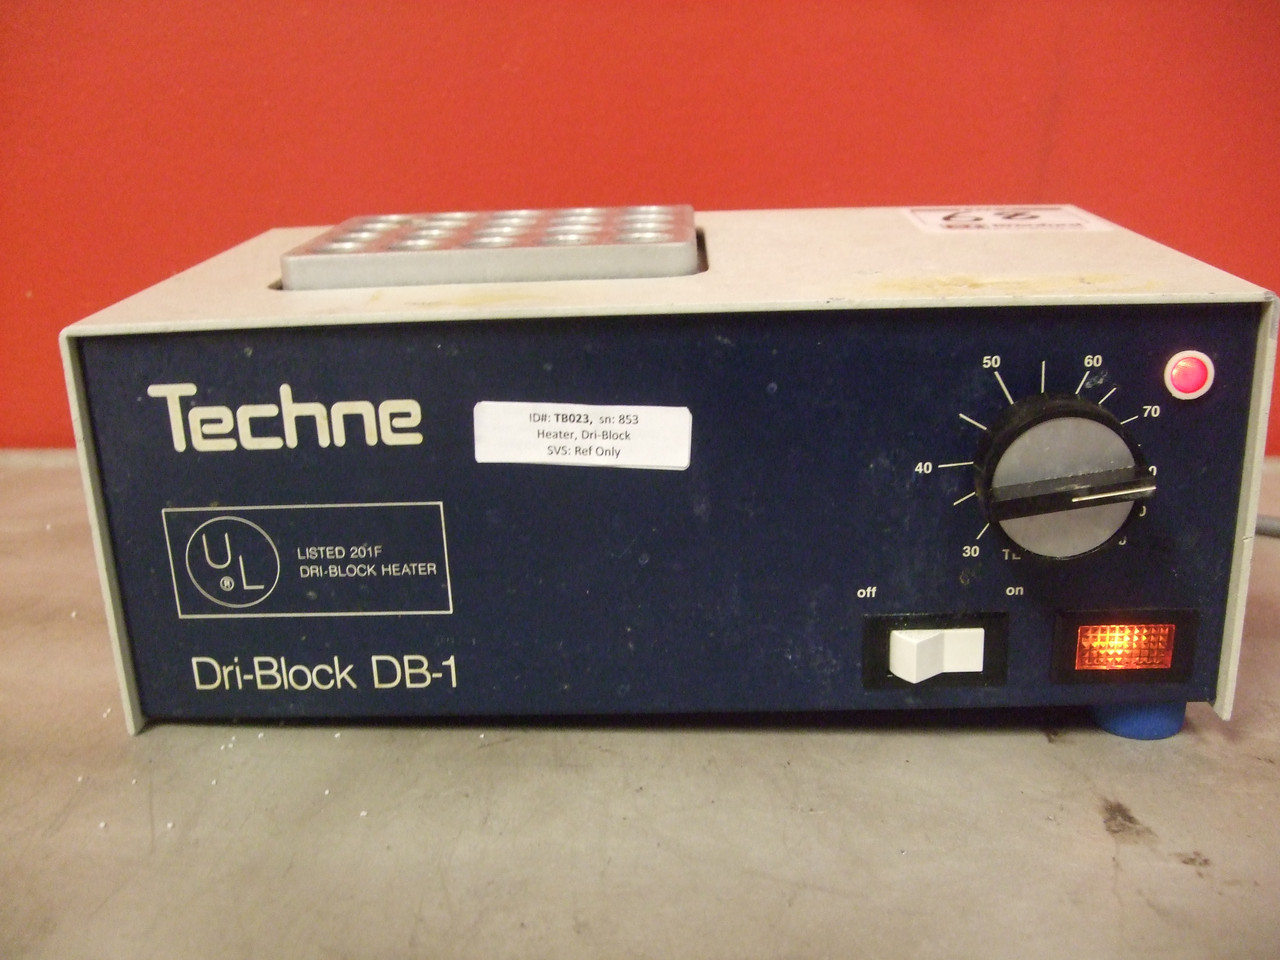 Techne Dri-Block DB-1 Heat Block / Dry Bath